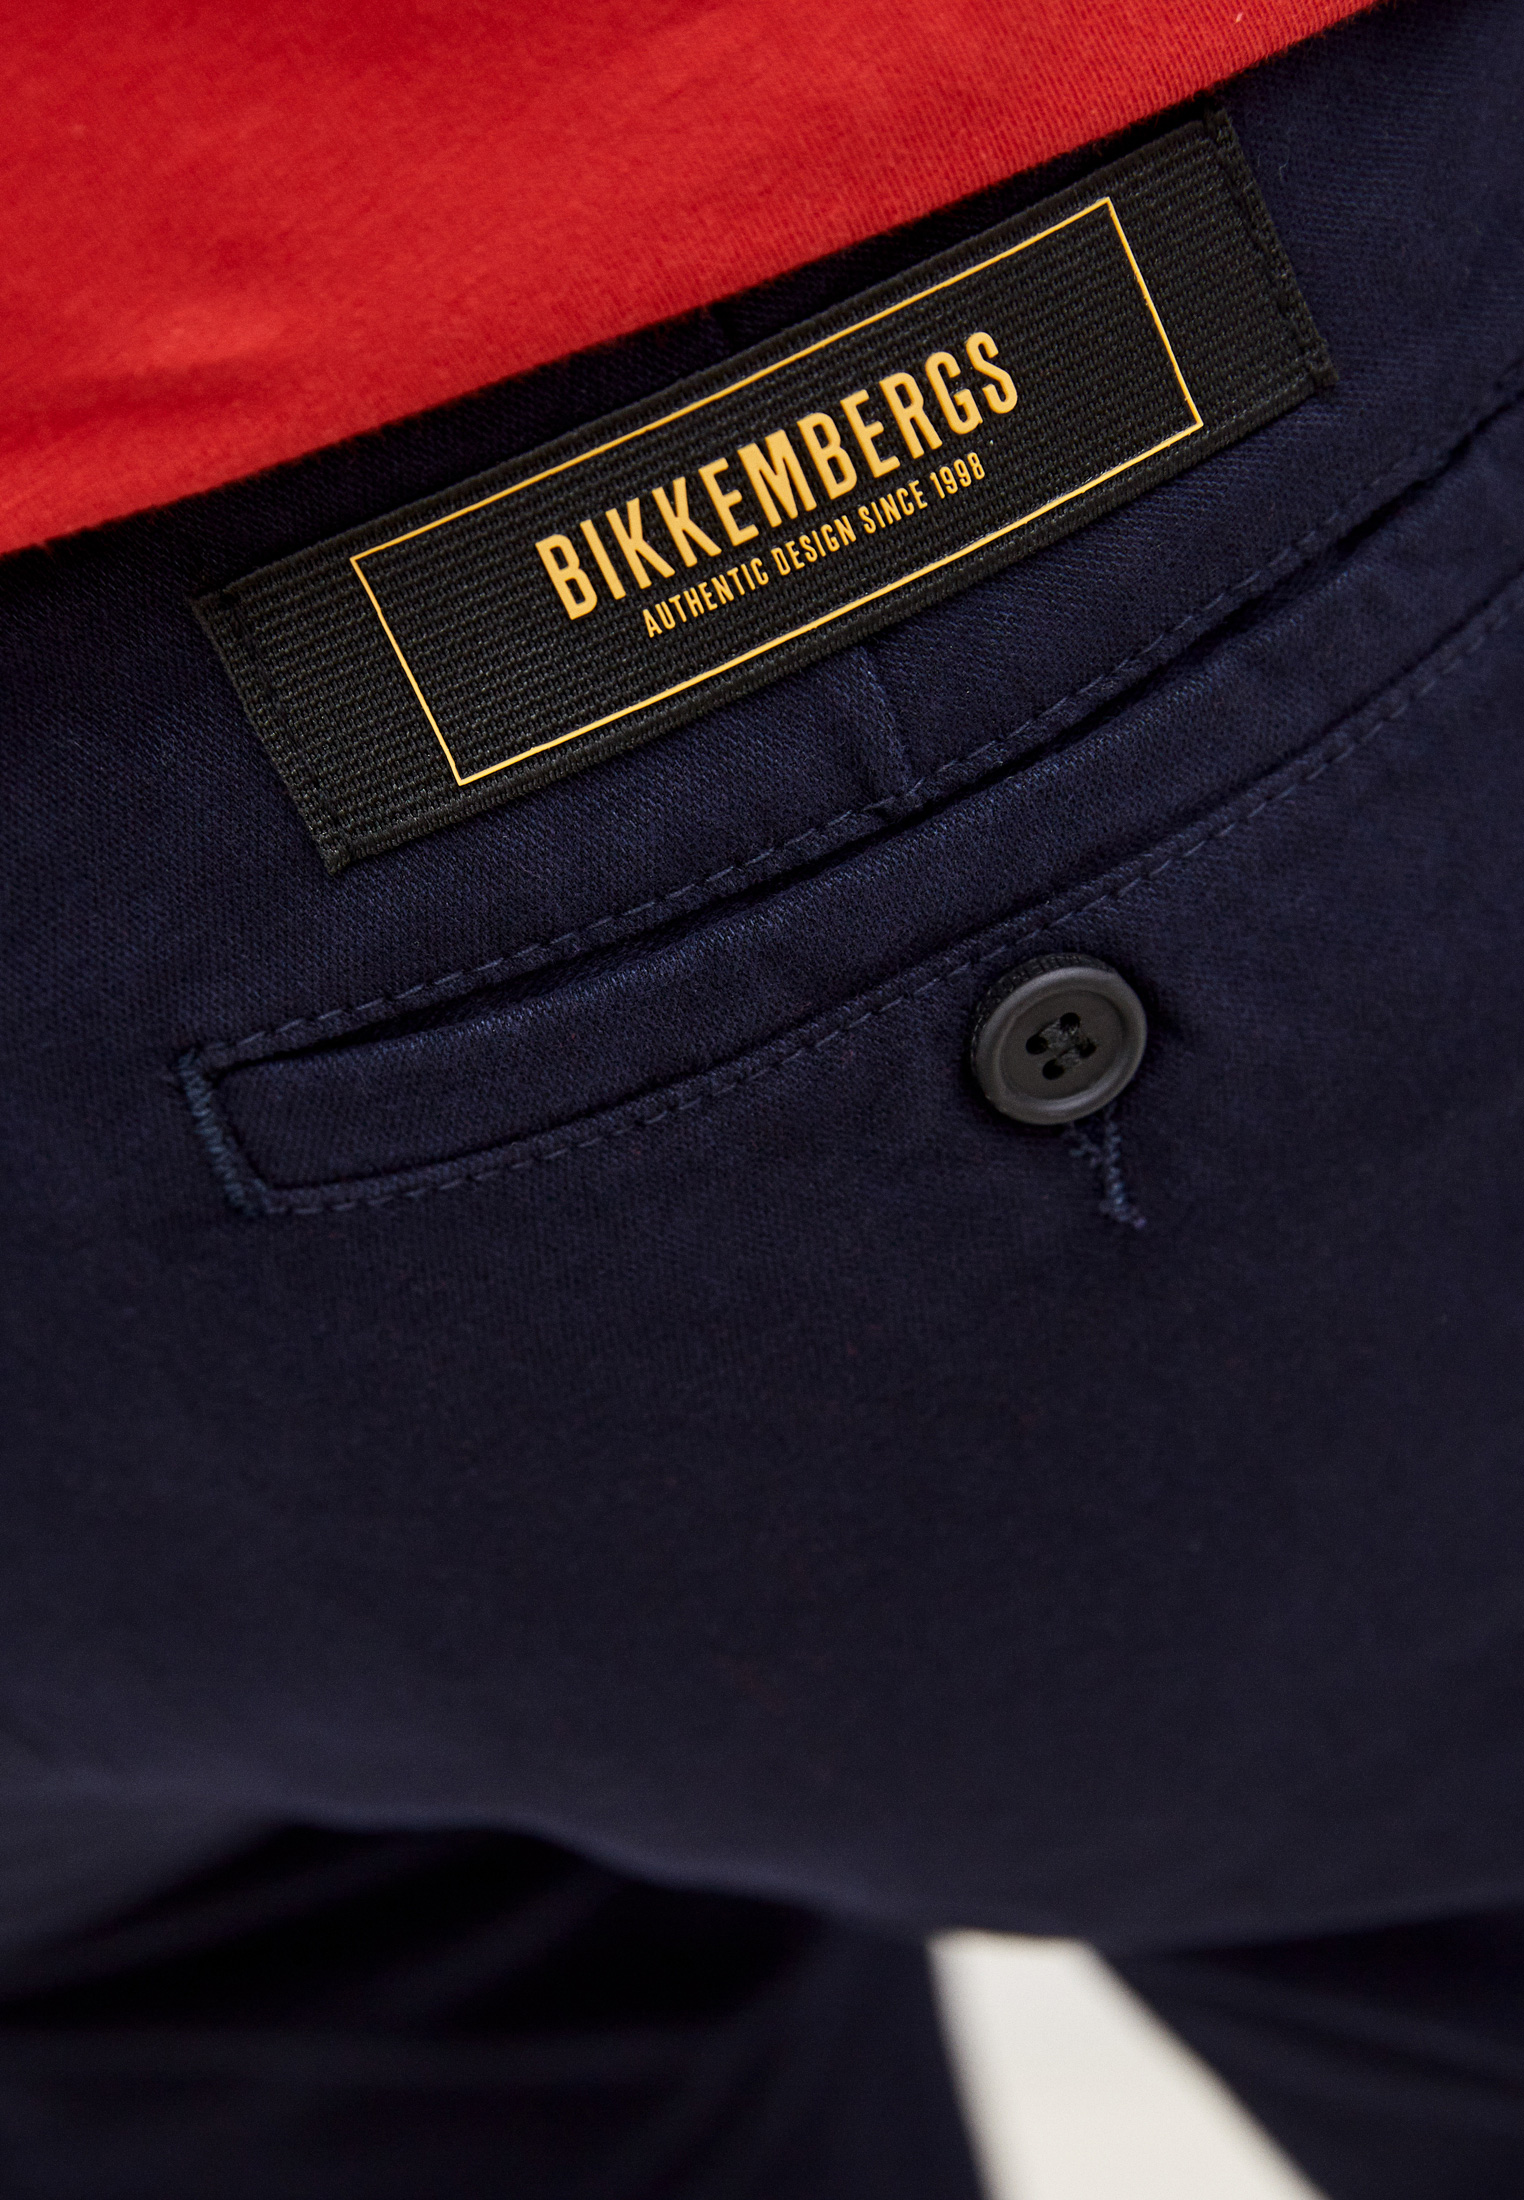 Мужские повседневные брюки Bikkembergs (Биккембергс) C P 001 00 S 3330: изображение 5